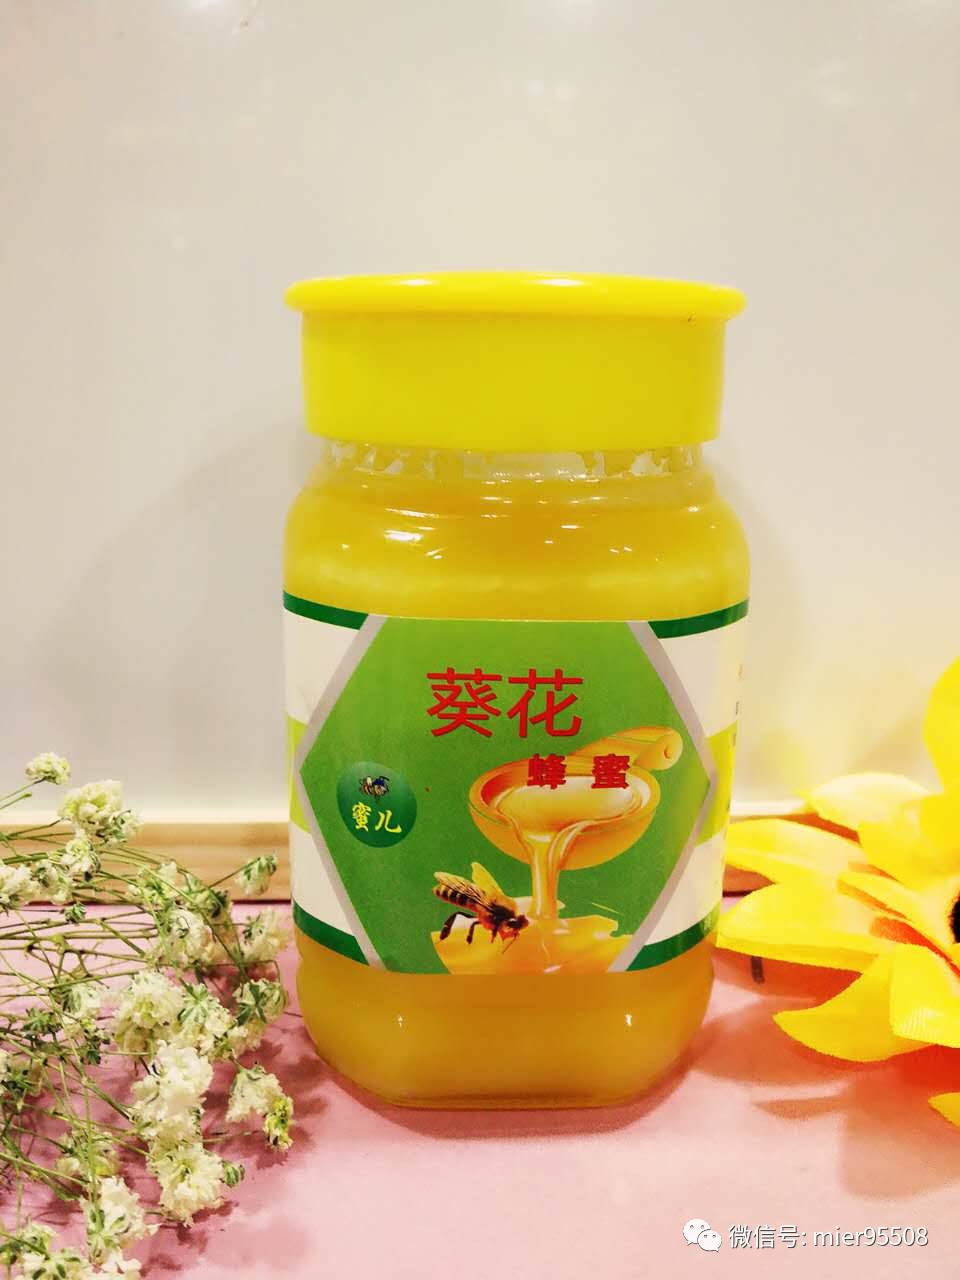 白糖蜂蜜唇膜 每天喝柠檬蜂蜜水 喝蜂蜜的来说说 醋加蜂蜜能减肥吗 蜂蜜+芹菜汁